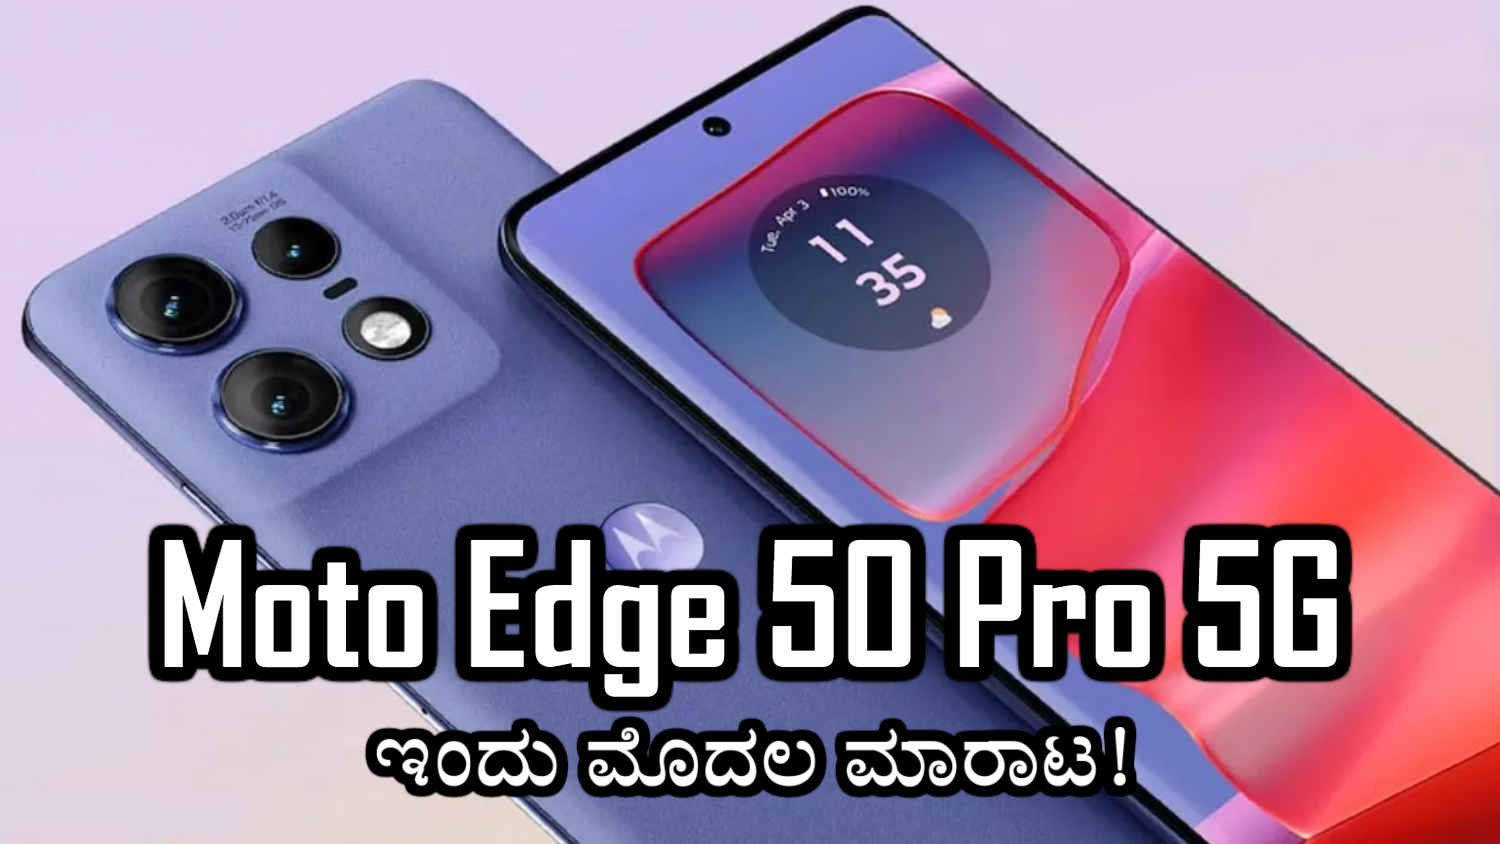 50MP ಸೆಲ್ಫಿ ಕ್ಯಾಮೆರಾದ Moto Edge 50 Pro 5G ಮೊದಲ ಮಾರಾಟ ಫ್ಲಿಪ್‌ಕಾರ್ಟ್‌ನಲ್ಲಿ ಭರ್ಜರಿ ಆಫರ್‌ಗಳೊಂದಿಗೆ ಲಭ್ಯ!